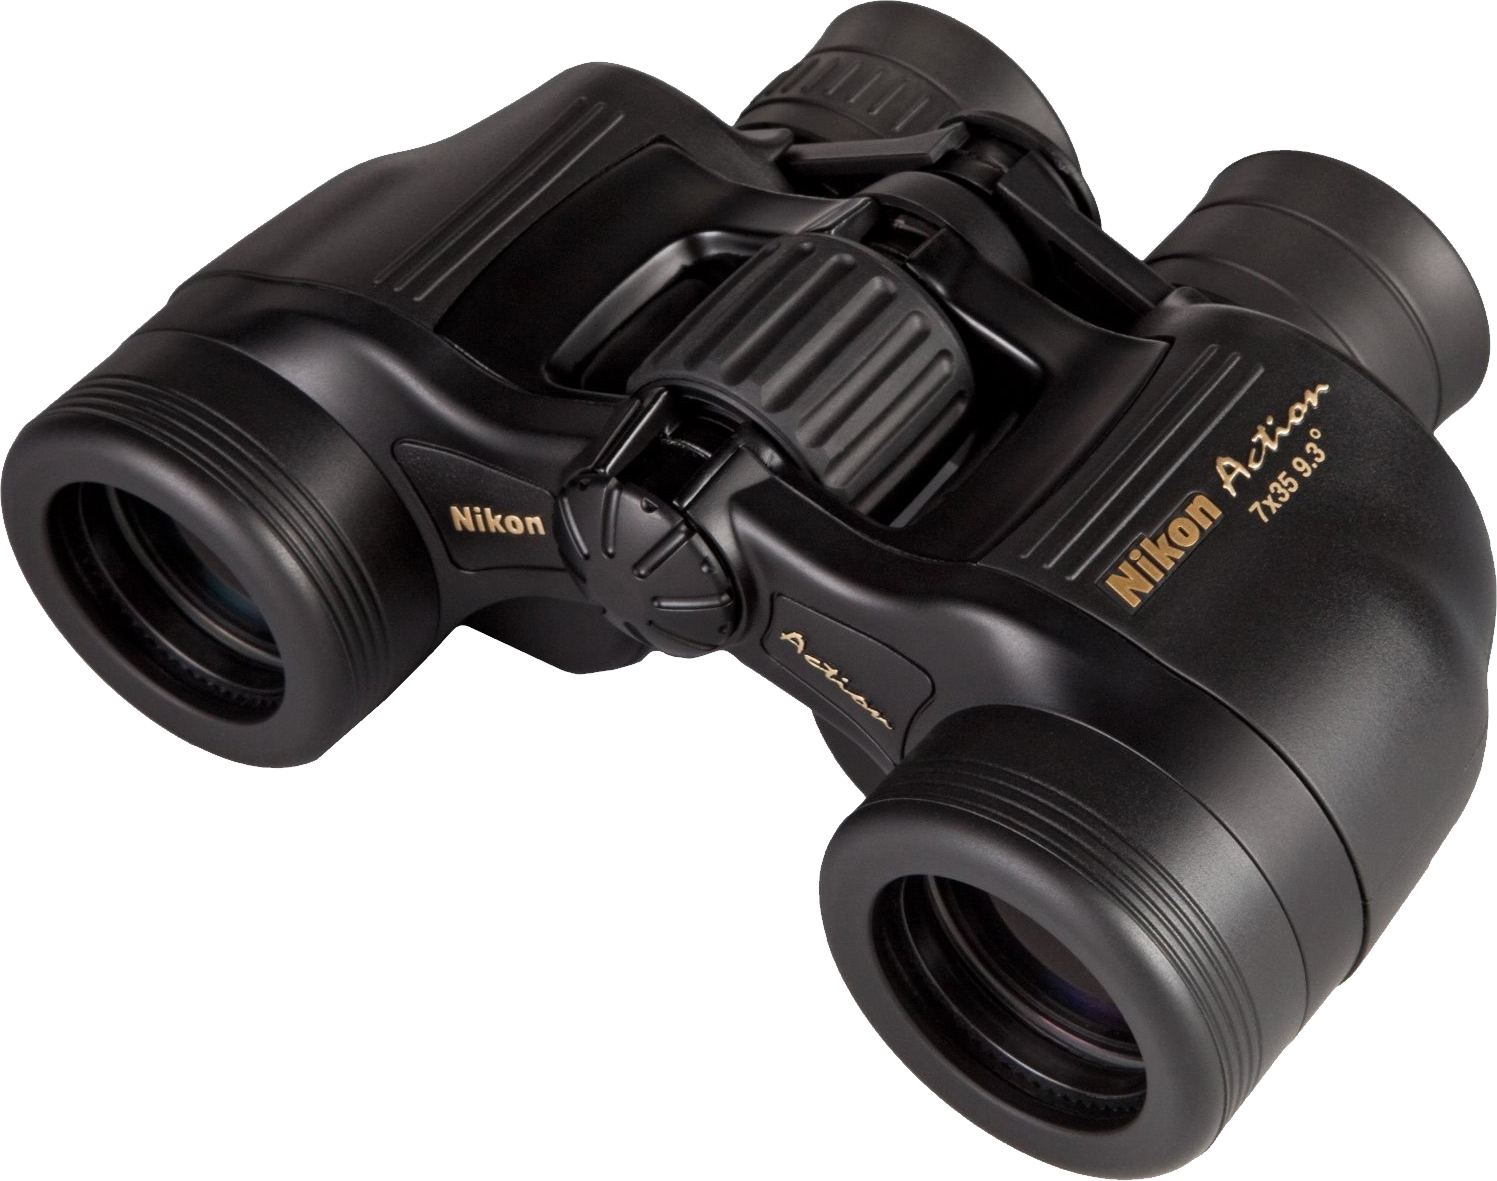 Hands clipart binoculars. Binocular png images free